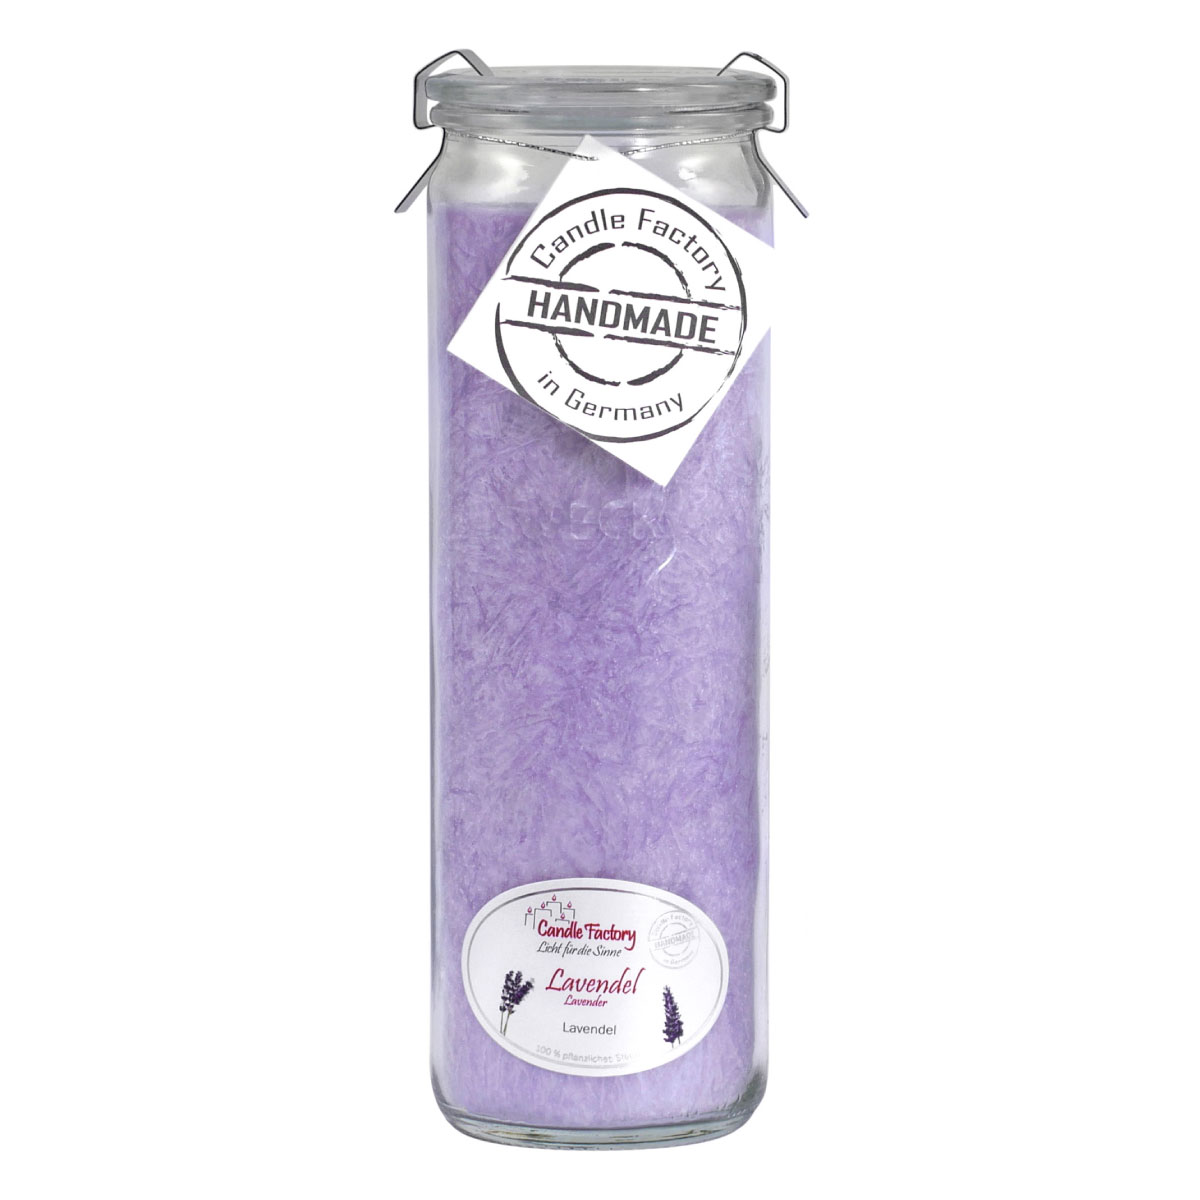 Lavendel - Big Jumbo Windlicht im Weckglas von Candle Factory